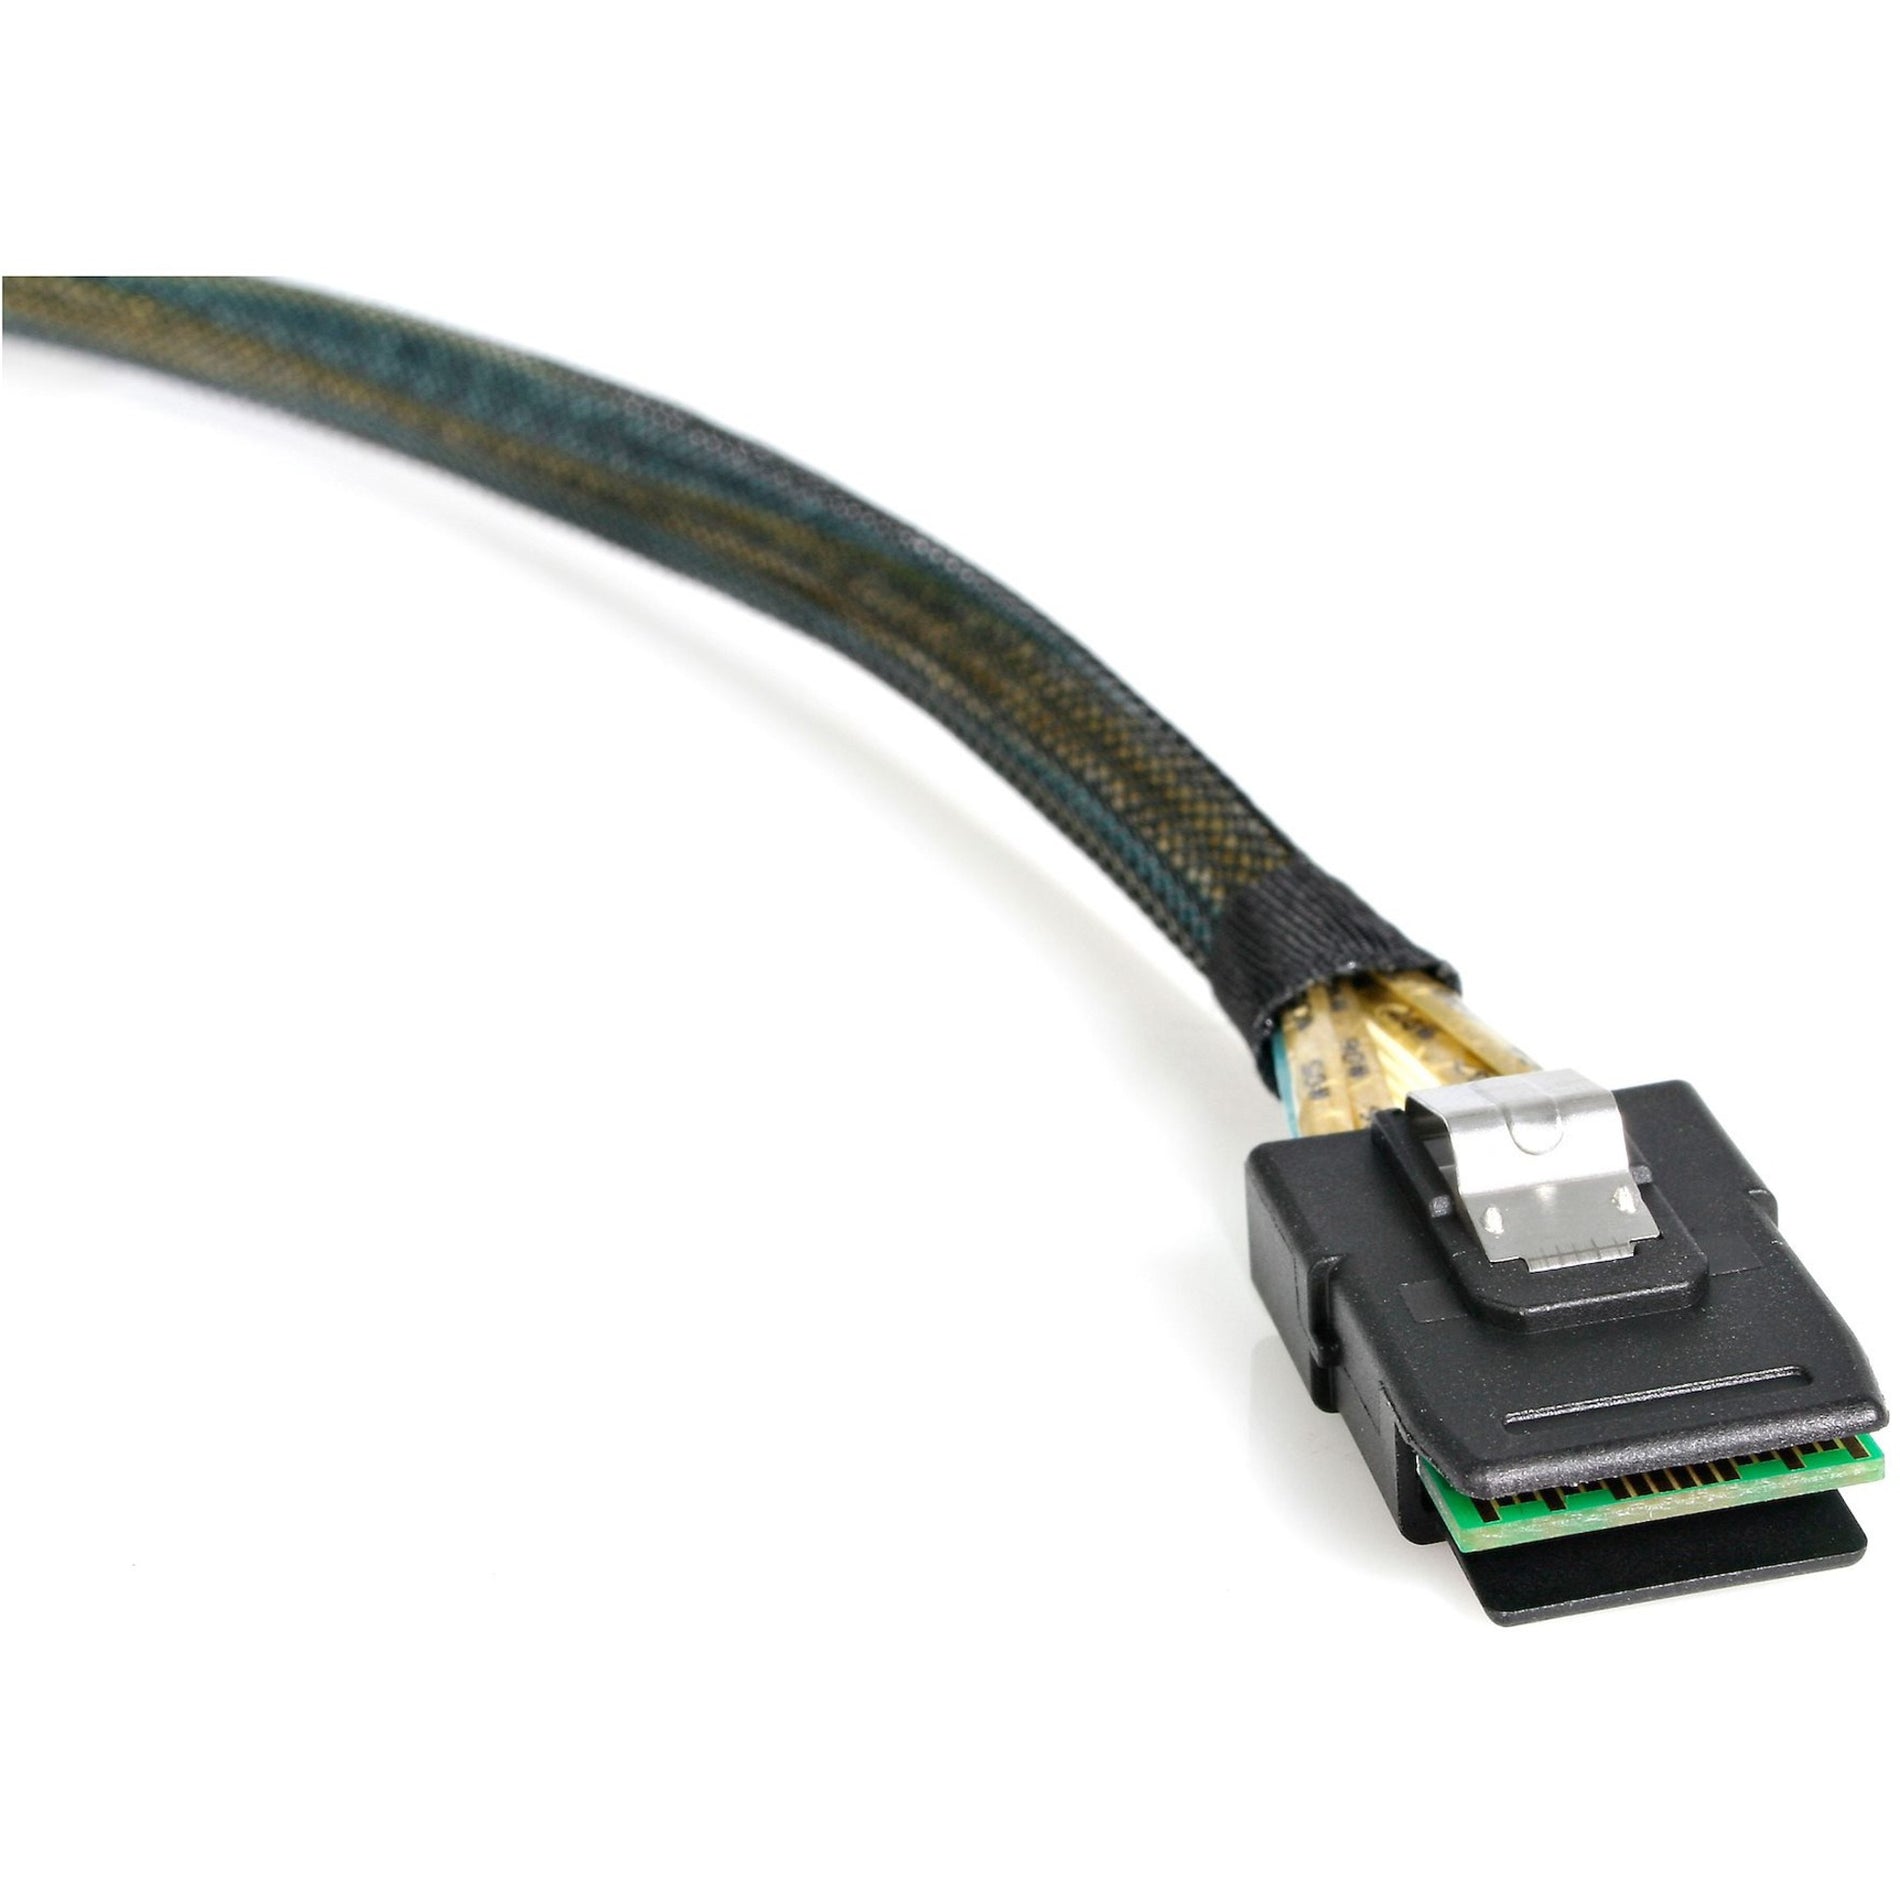 StarTech.com SAS878750 50cm Mini-SAS Cable SFF-8087 To SFF-8087, Data Transfer Cable